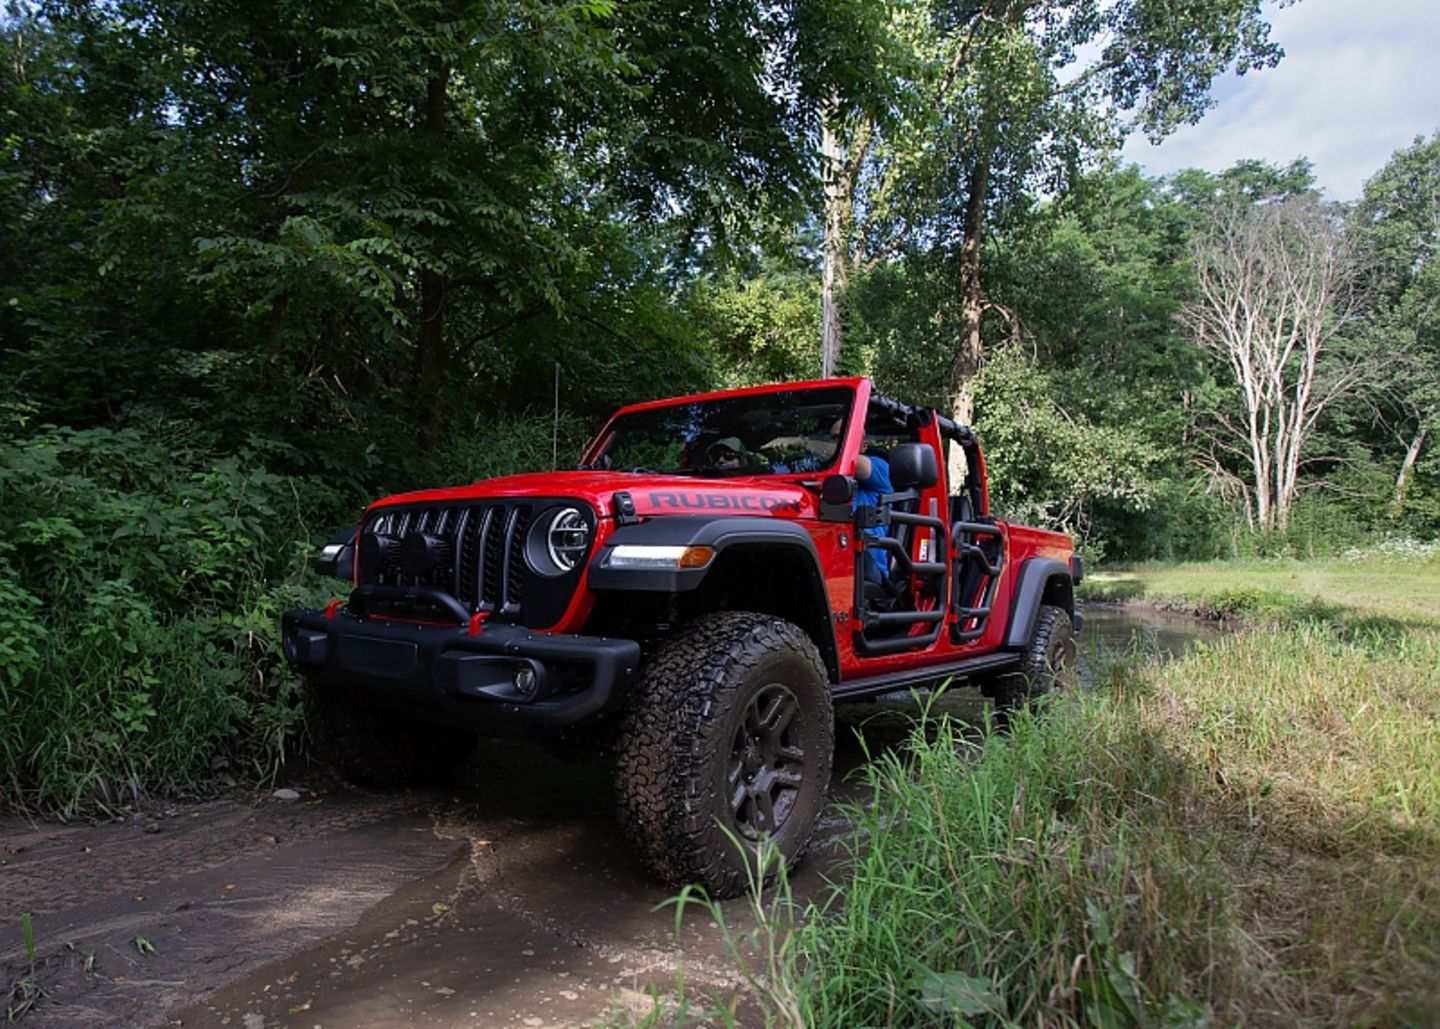 Der Jeep Gladiator Rubicon Mopar kommt im Gelände ausgezeichnet klar